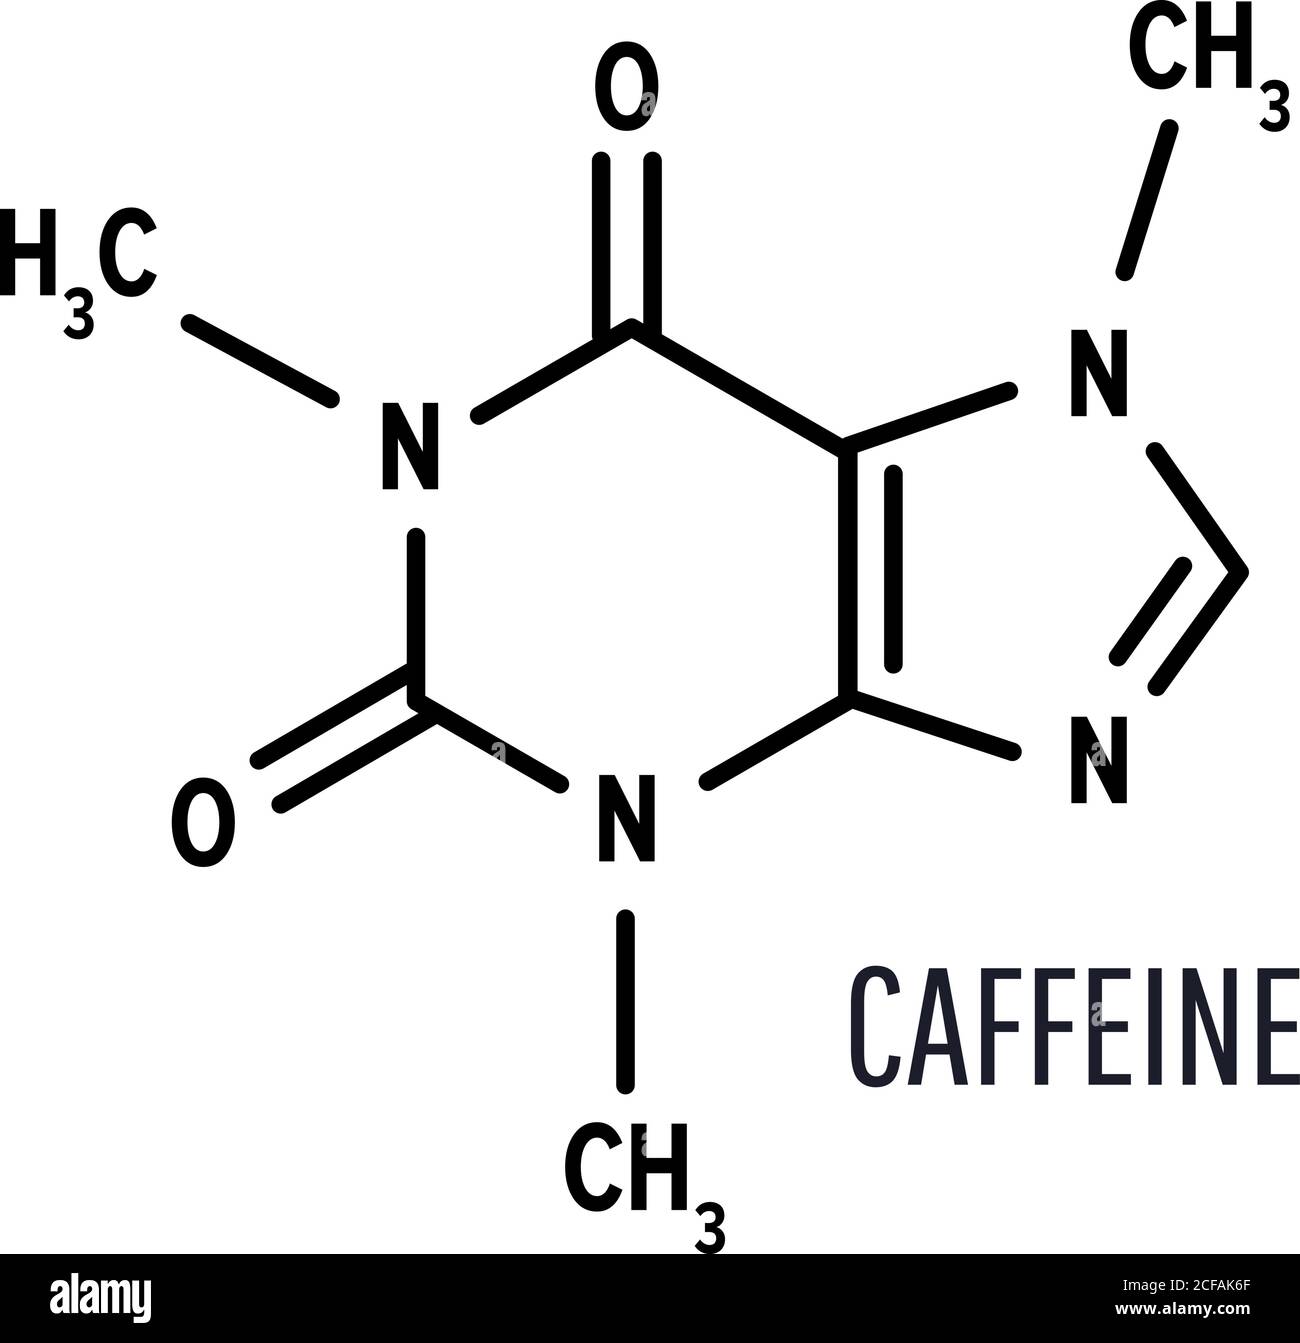 Formule chimique structurale de caféine sur fond blanc Illustration de Vecteur